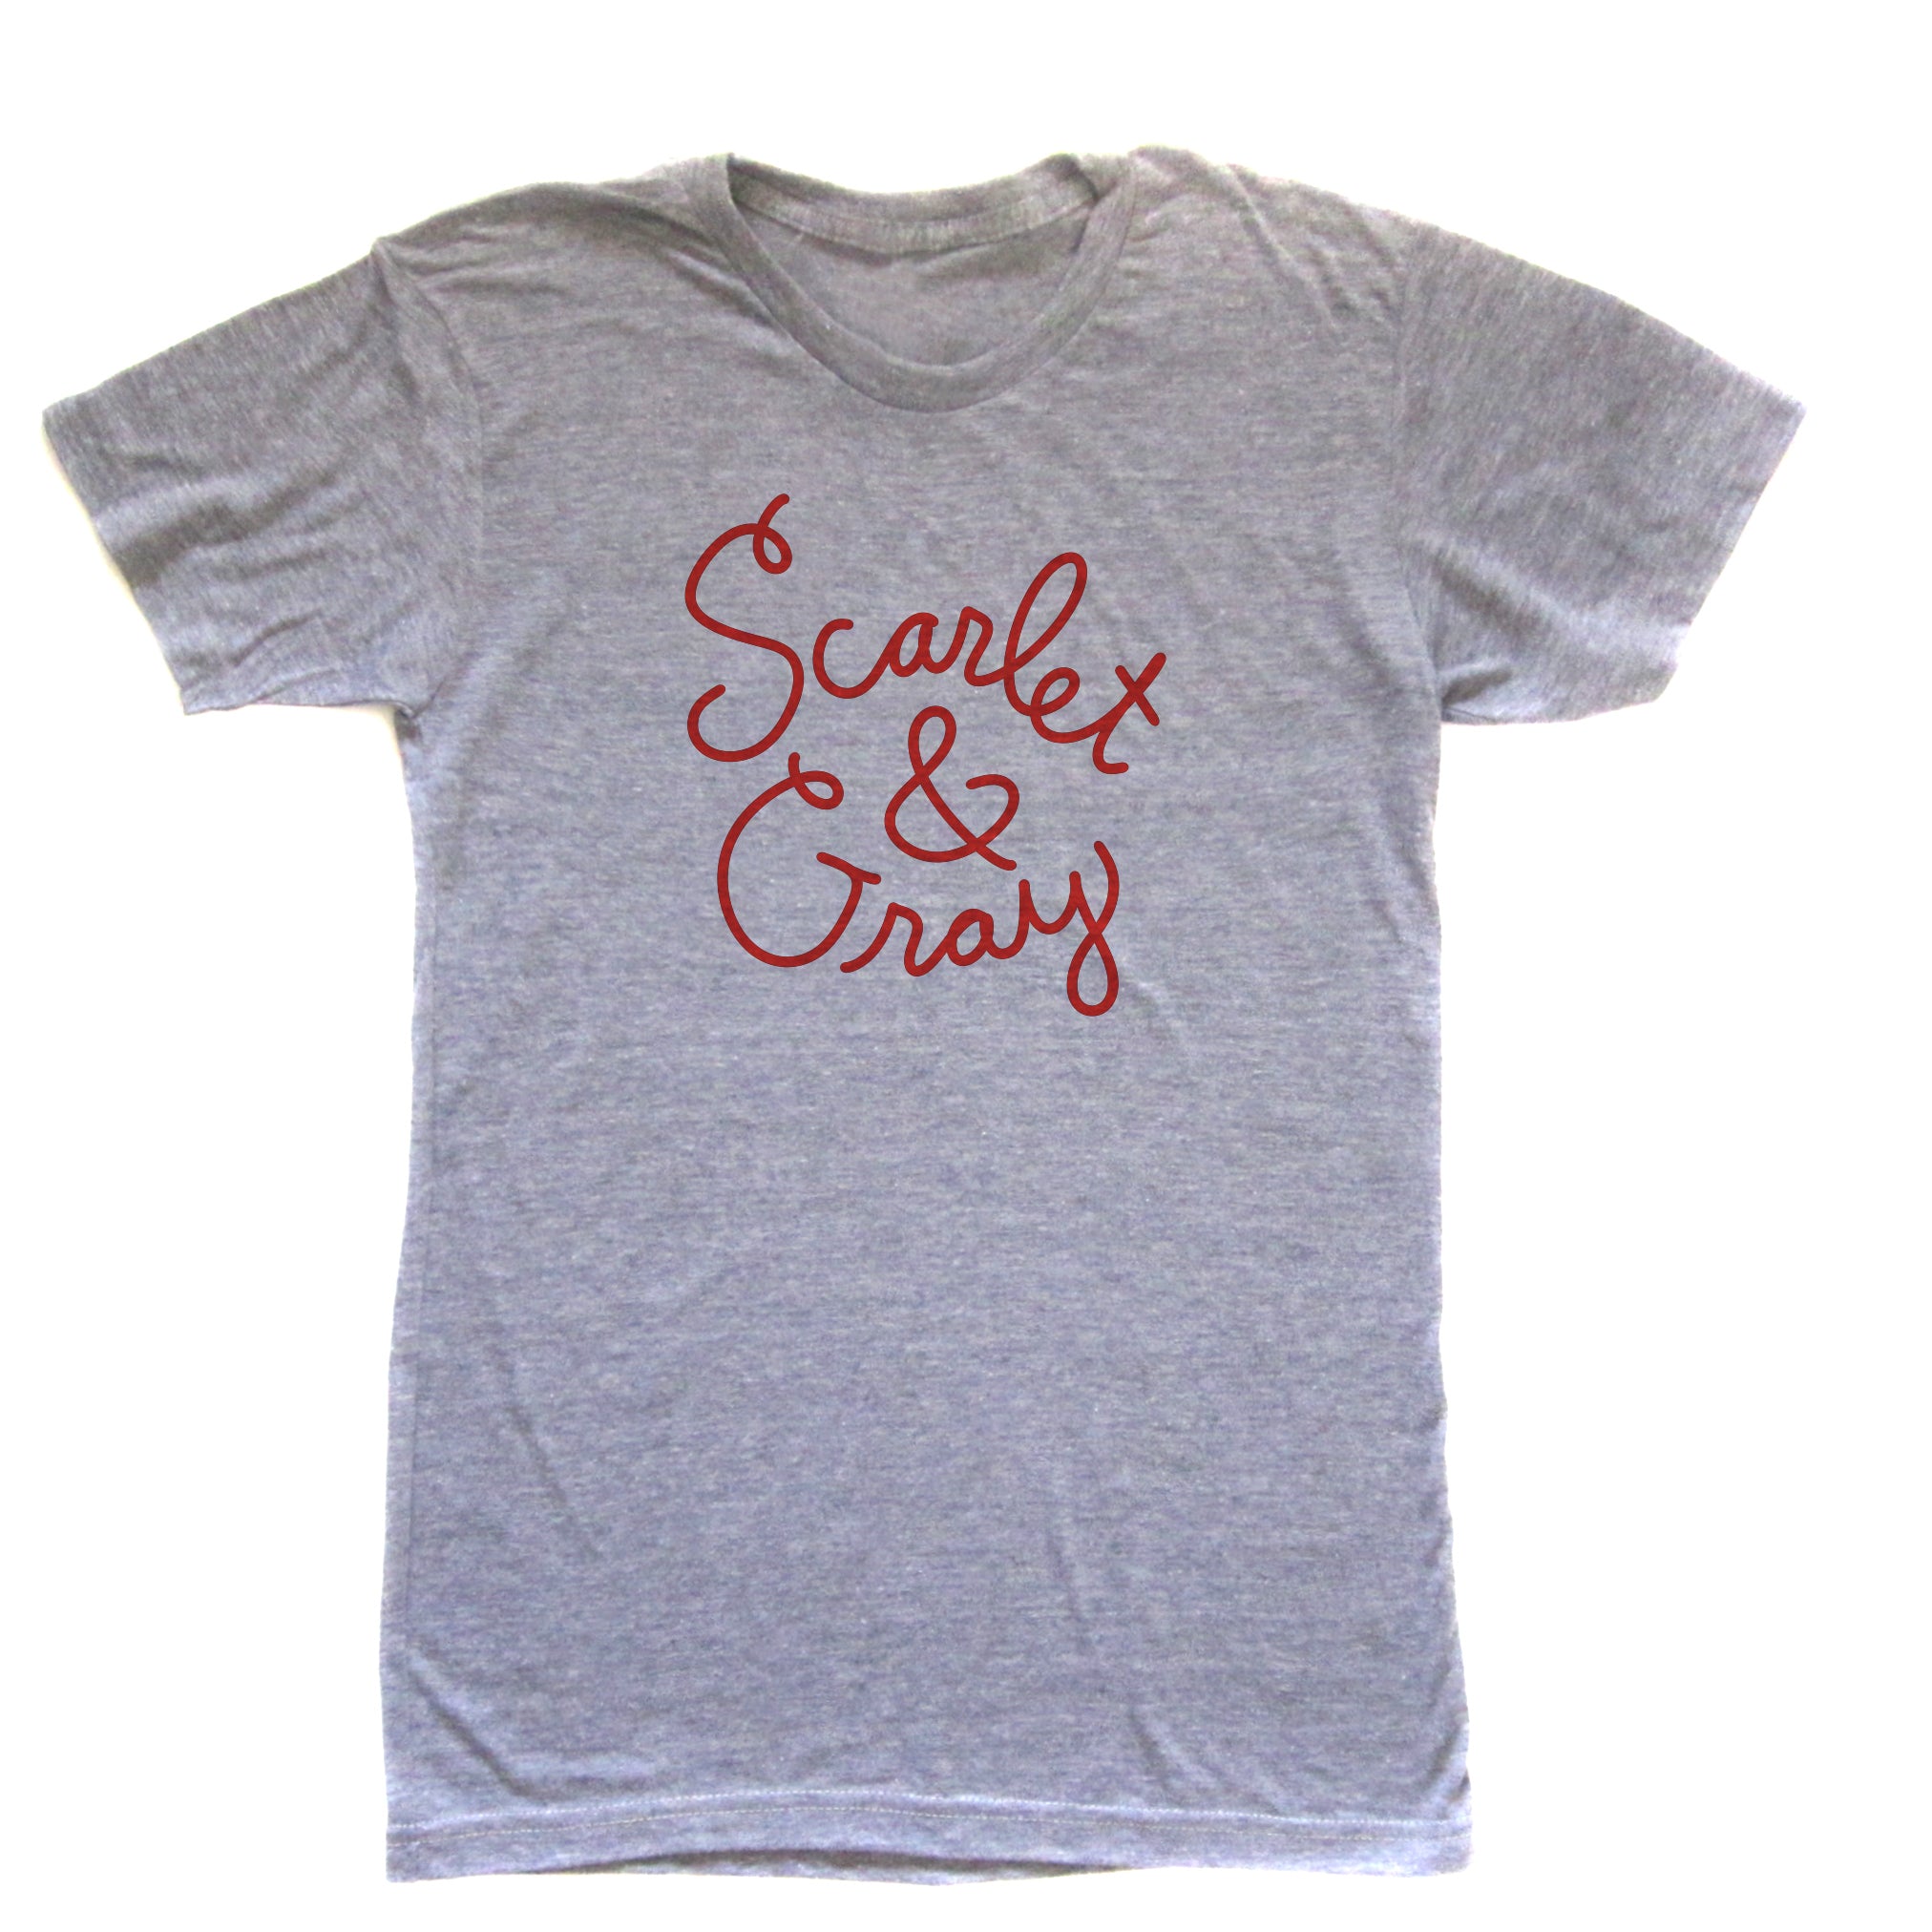 Scarlet & Gray (OSU Buckeyes) : Unisex tri-blend t-shirt